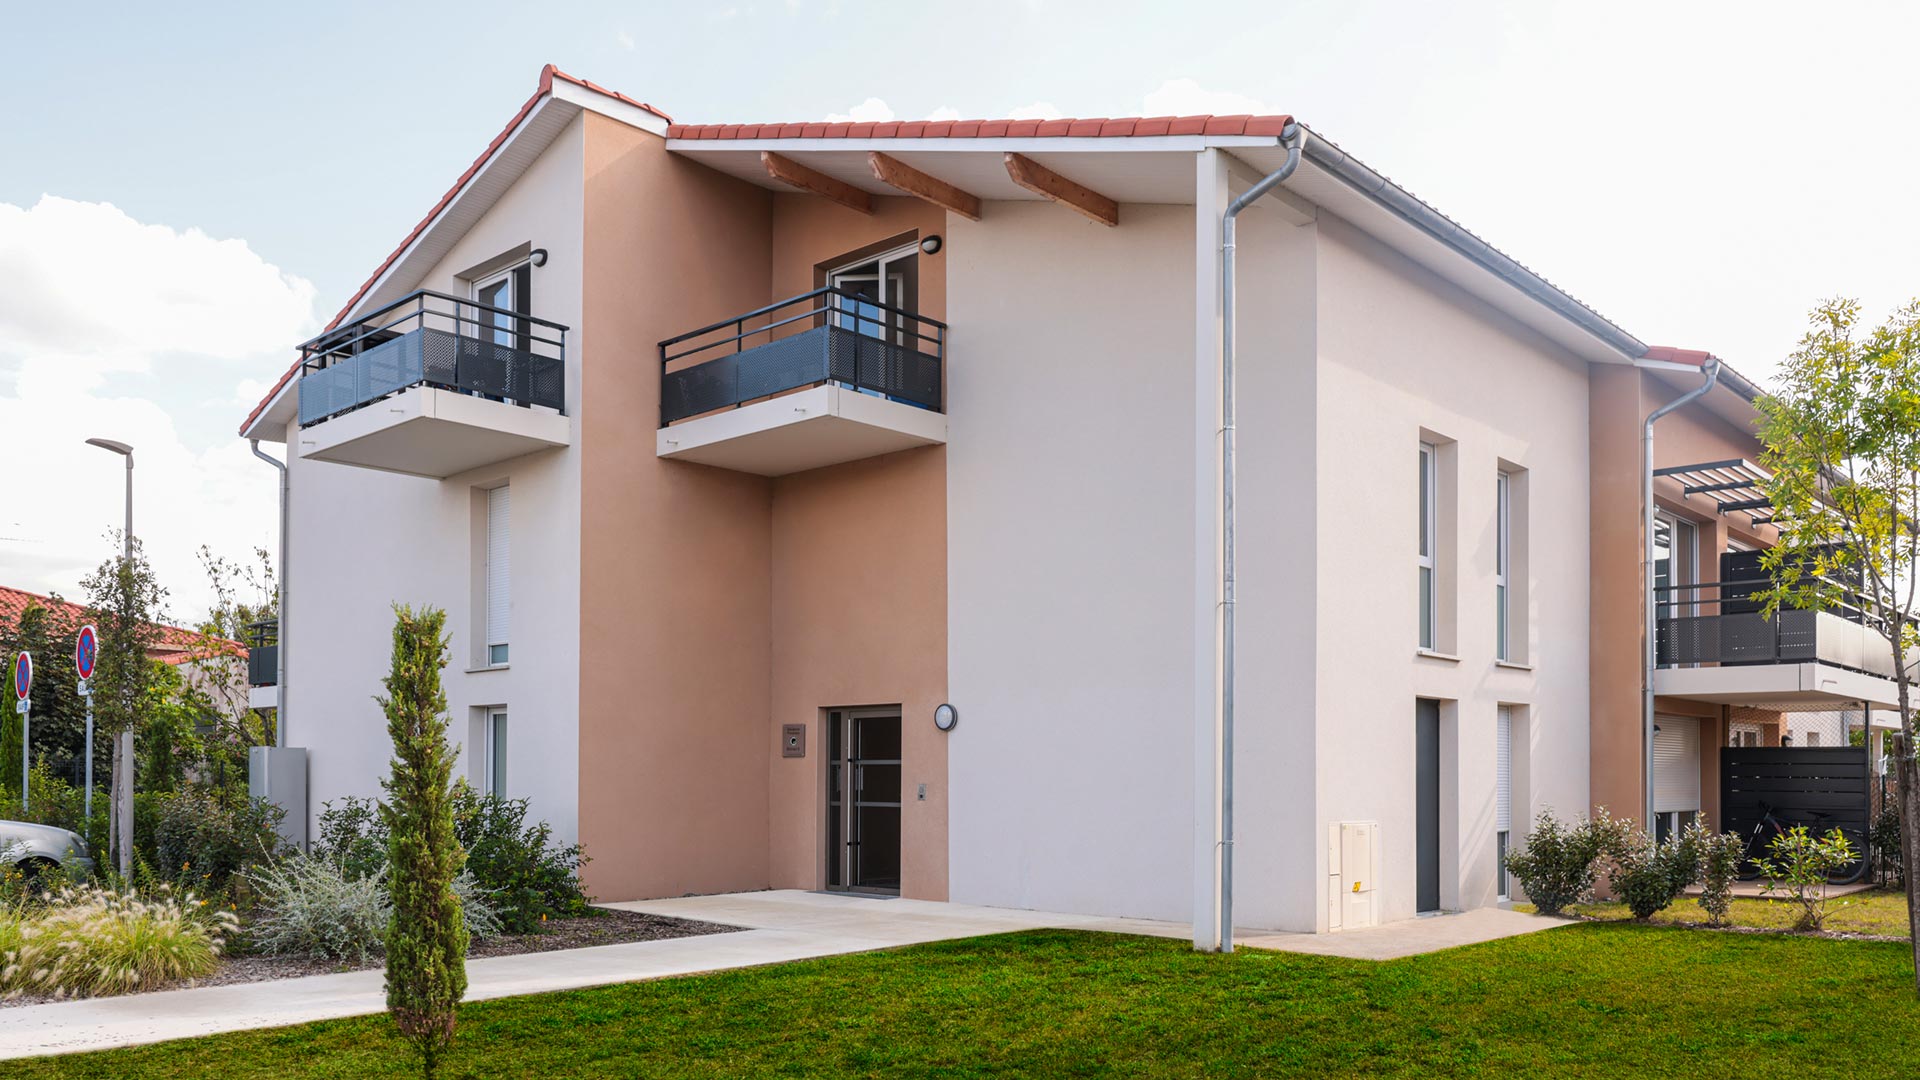 Petite copropriété de 45 logements neufs à Roques-sur-Garonne avec espaces communs soignés.